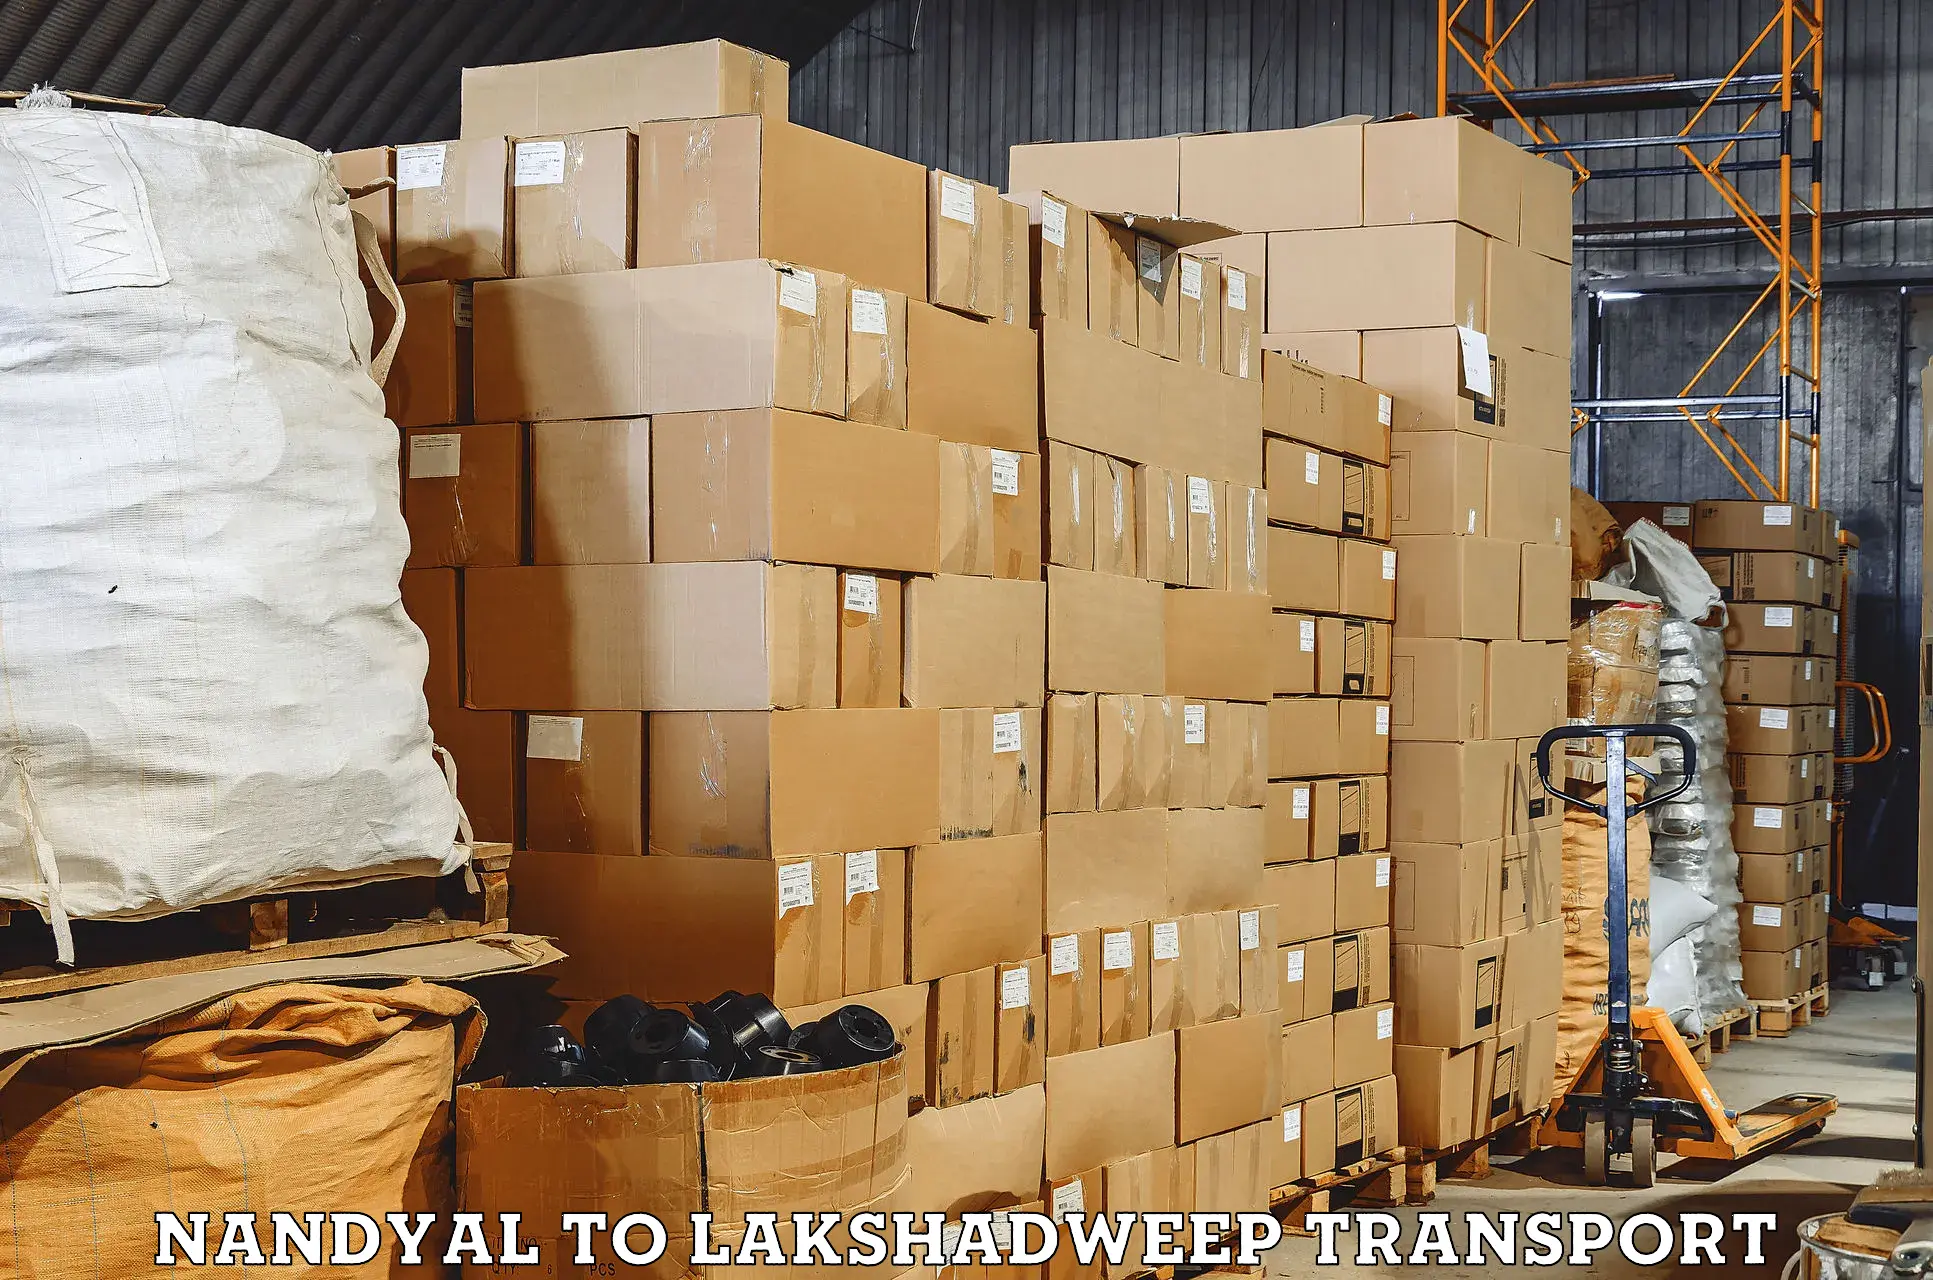 All India transport service Nandyal to Lakshadweep